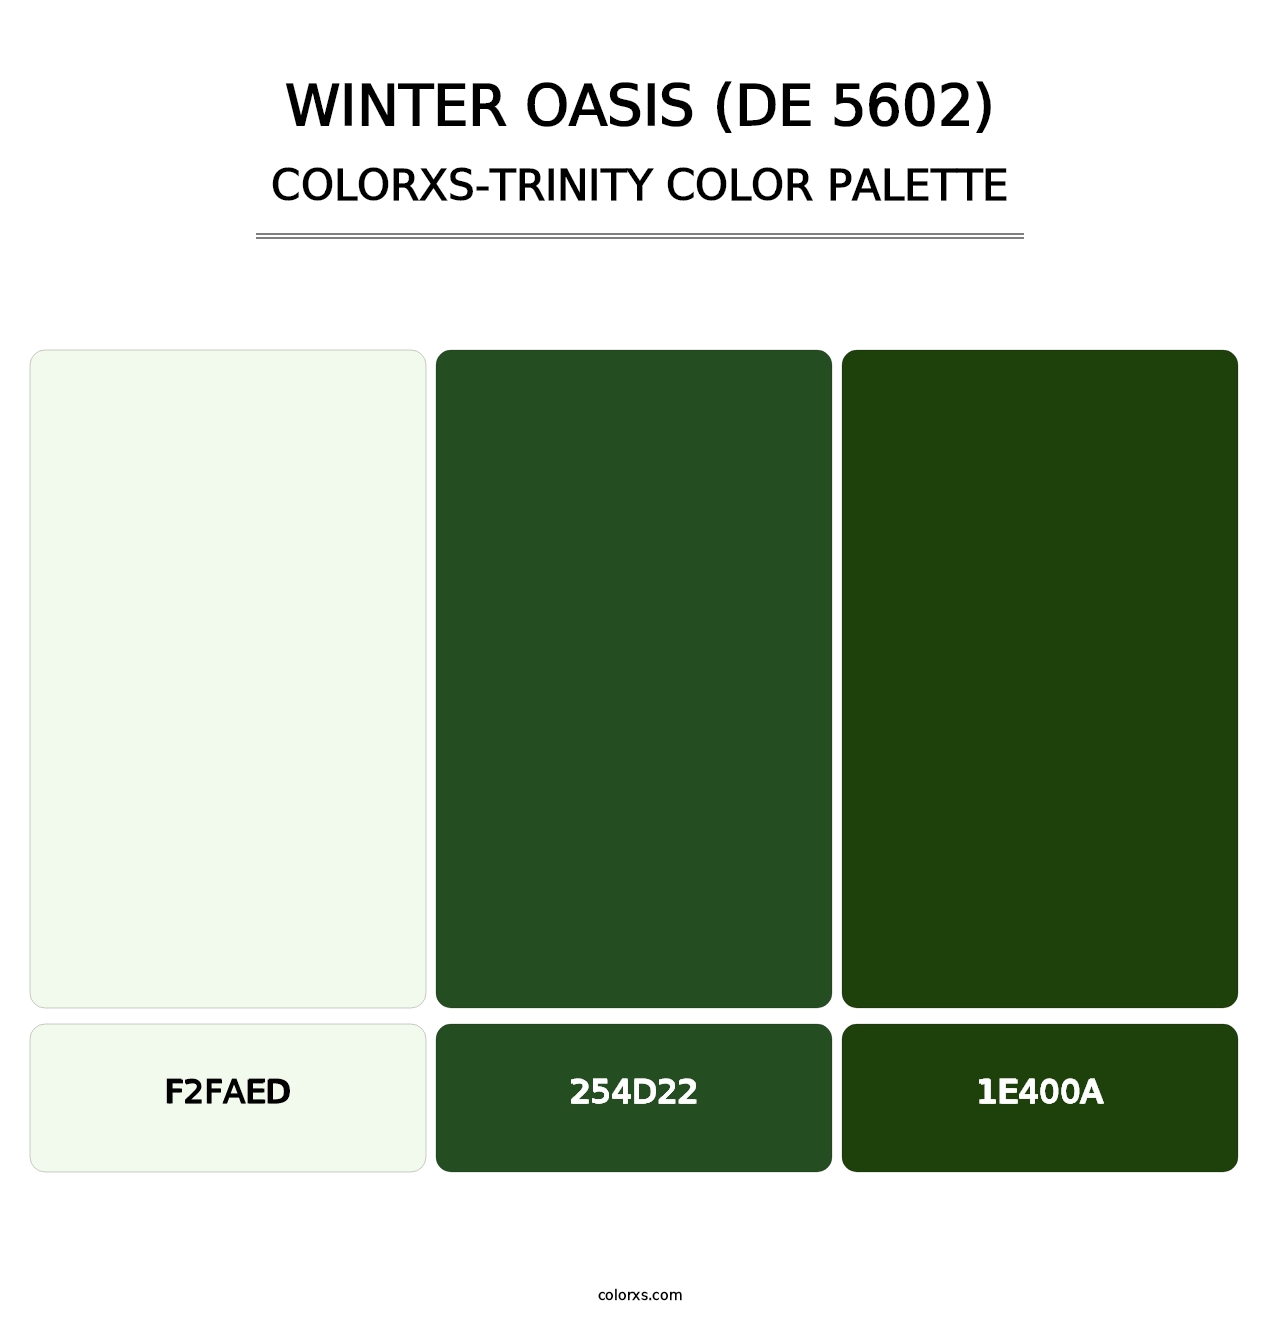 Winter Oasis (DE 5602) - Colorxs Trinity Palette